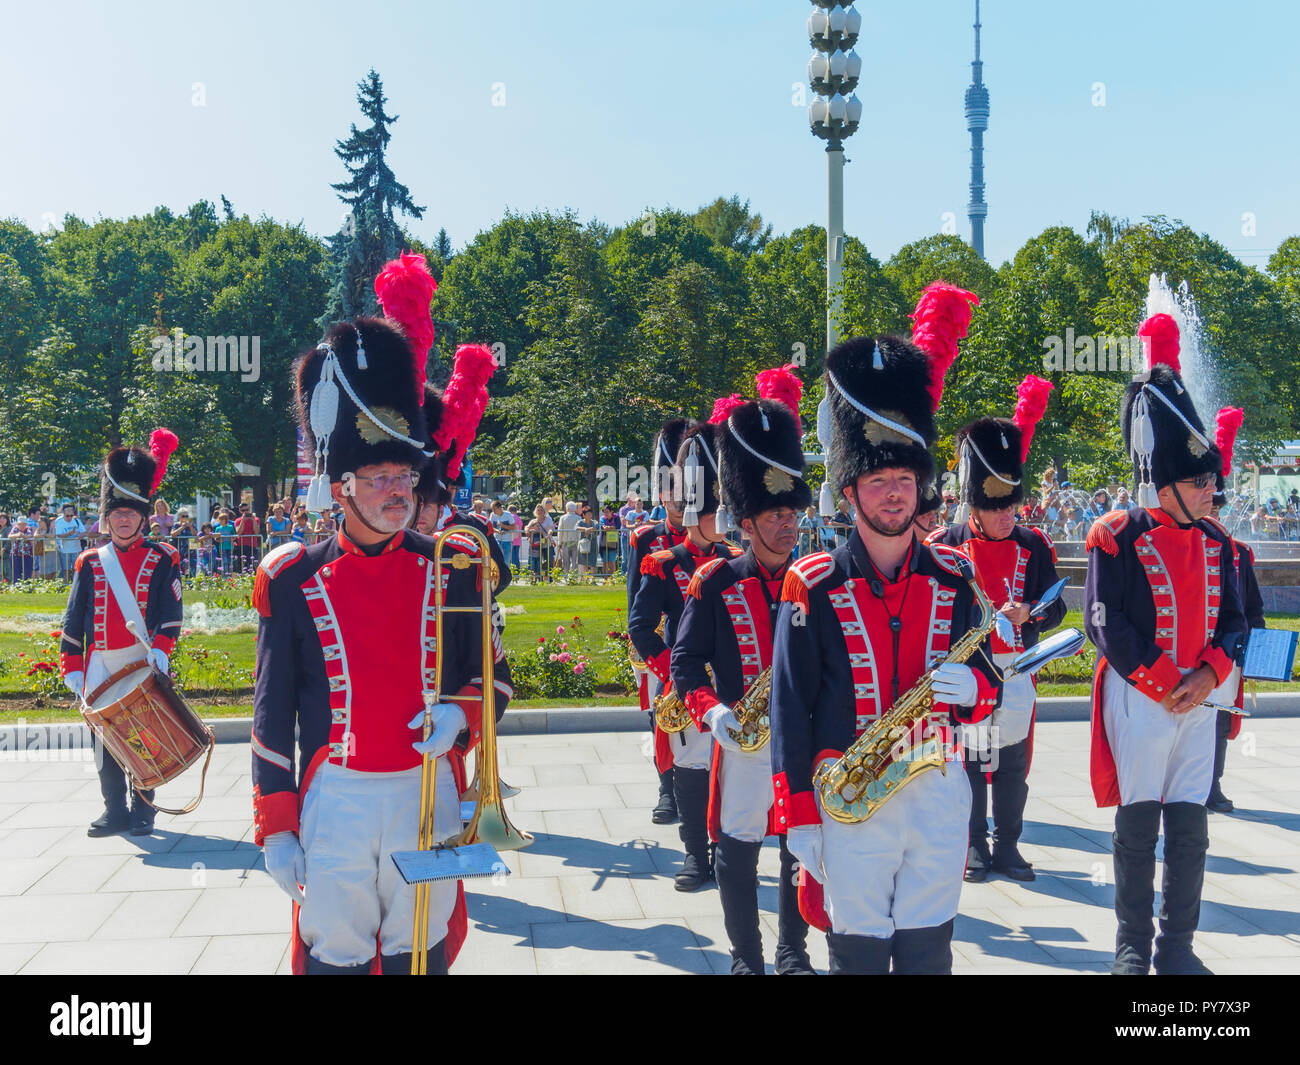 Moskau, Russland - 25. AUGUST 2018: Die feierliche Prozession der Spasskaja Turm internationales Militär Musik Festival Teilnehmer VDNKH. Stockfoto